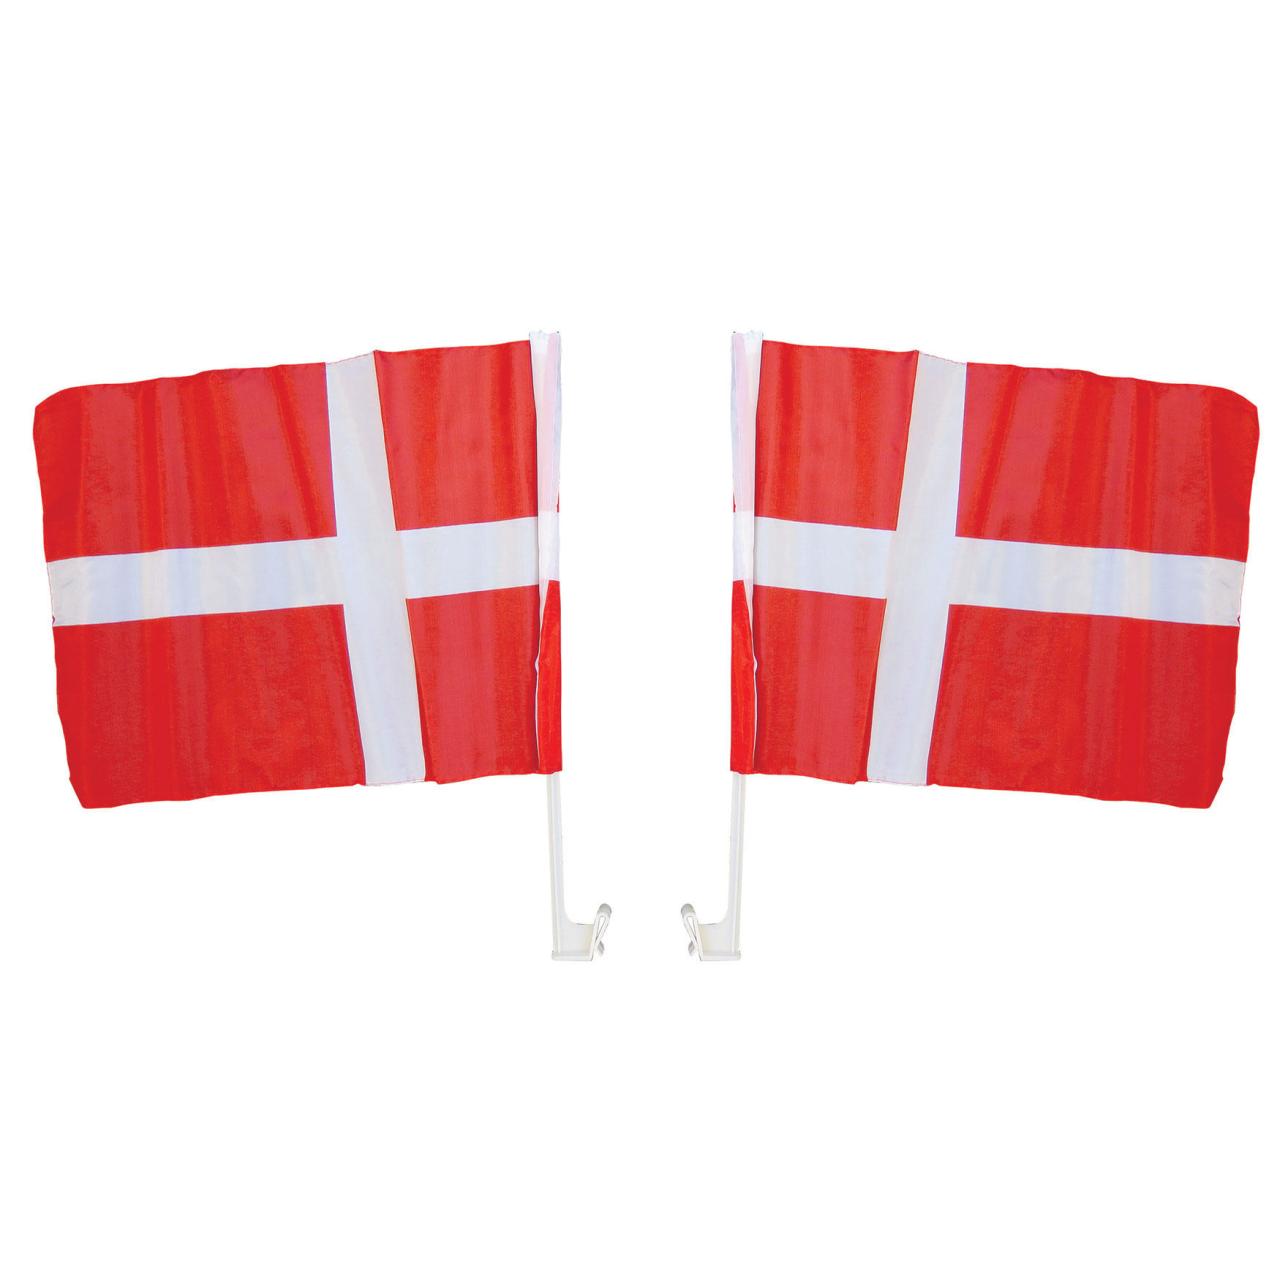 EM FLAG/Flaggen DK Für das Auto 2 STK